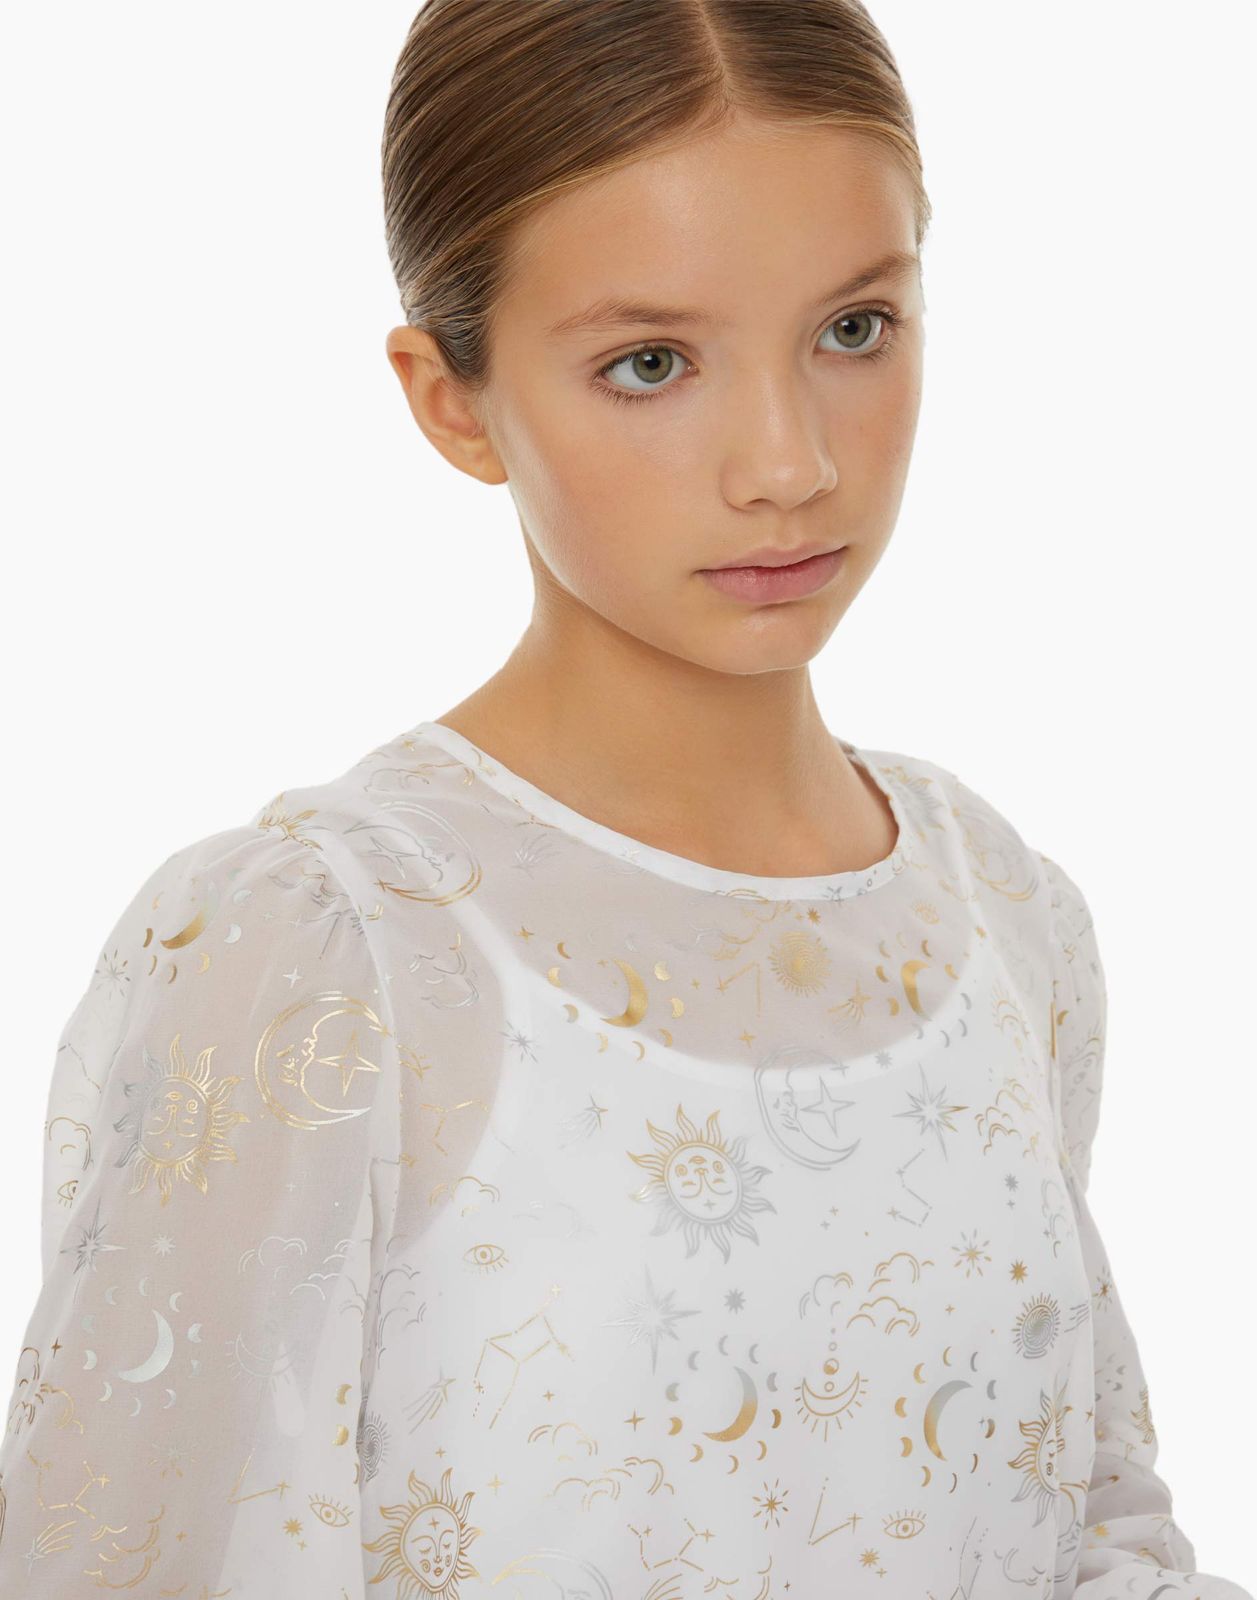 Блузка детская Gloria Jeans GWT003255, белый/разноцветный, 164